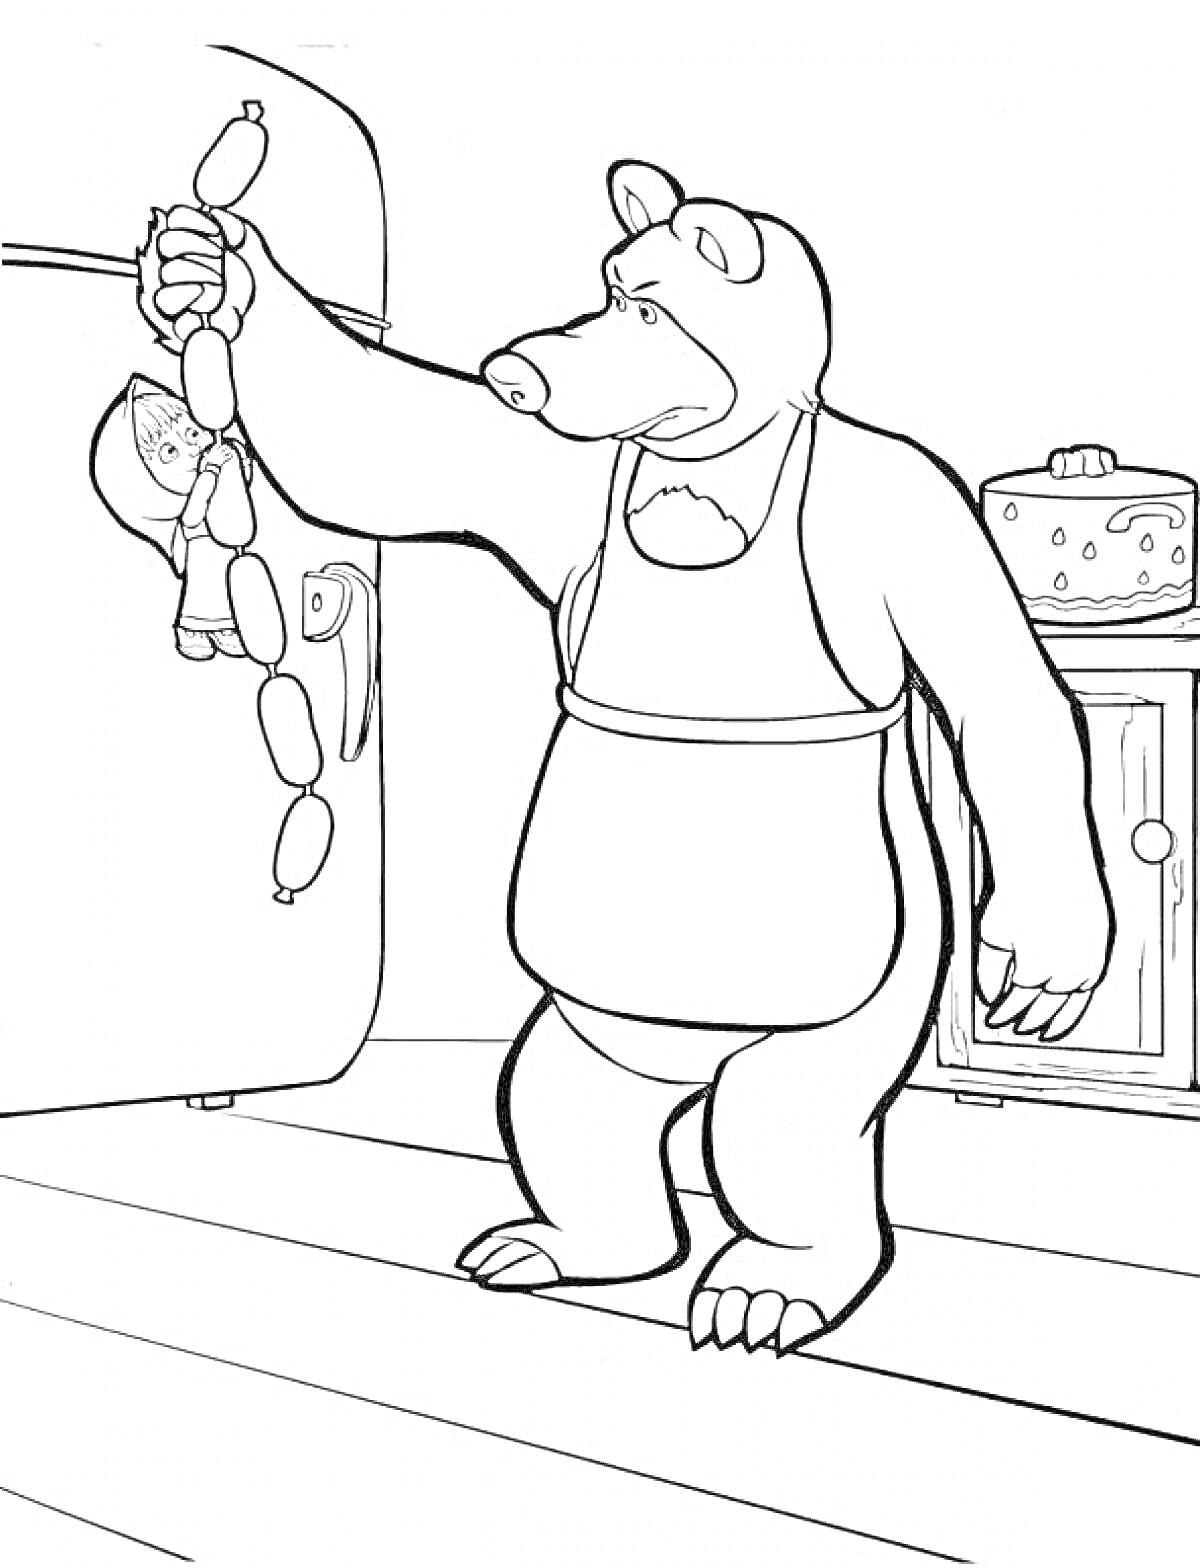 Раскраска Белый Медведь держит Машу и сосиски в своей кухне, на фоне холодильник и шкаф с пирогом